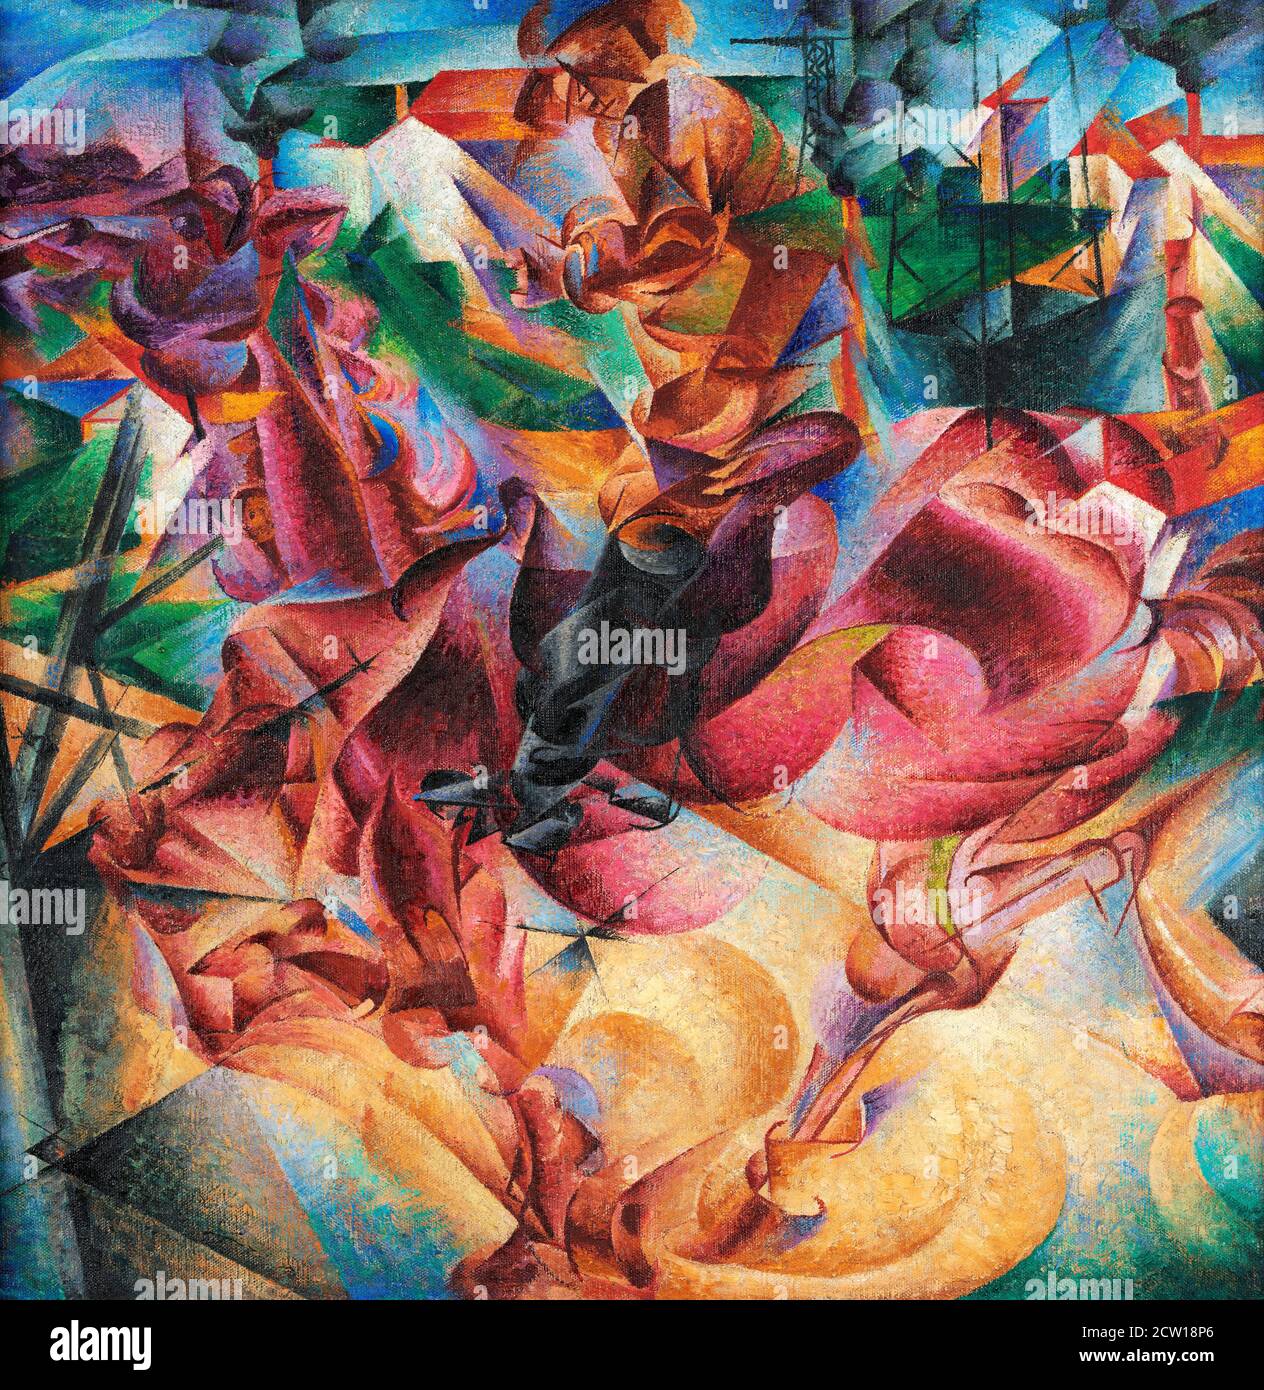 Umberto Boccioni. Peinture intitulée “Elasticità” par Umberto Boccioni (1882-1916), huile sur toile, 1912 Banque D'Images